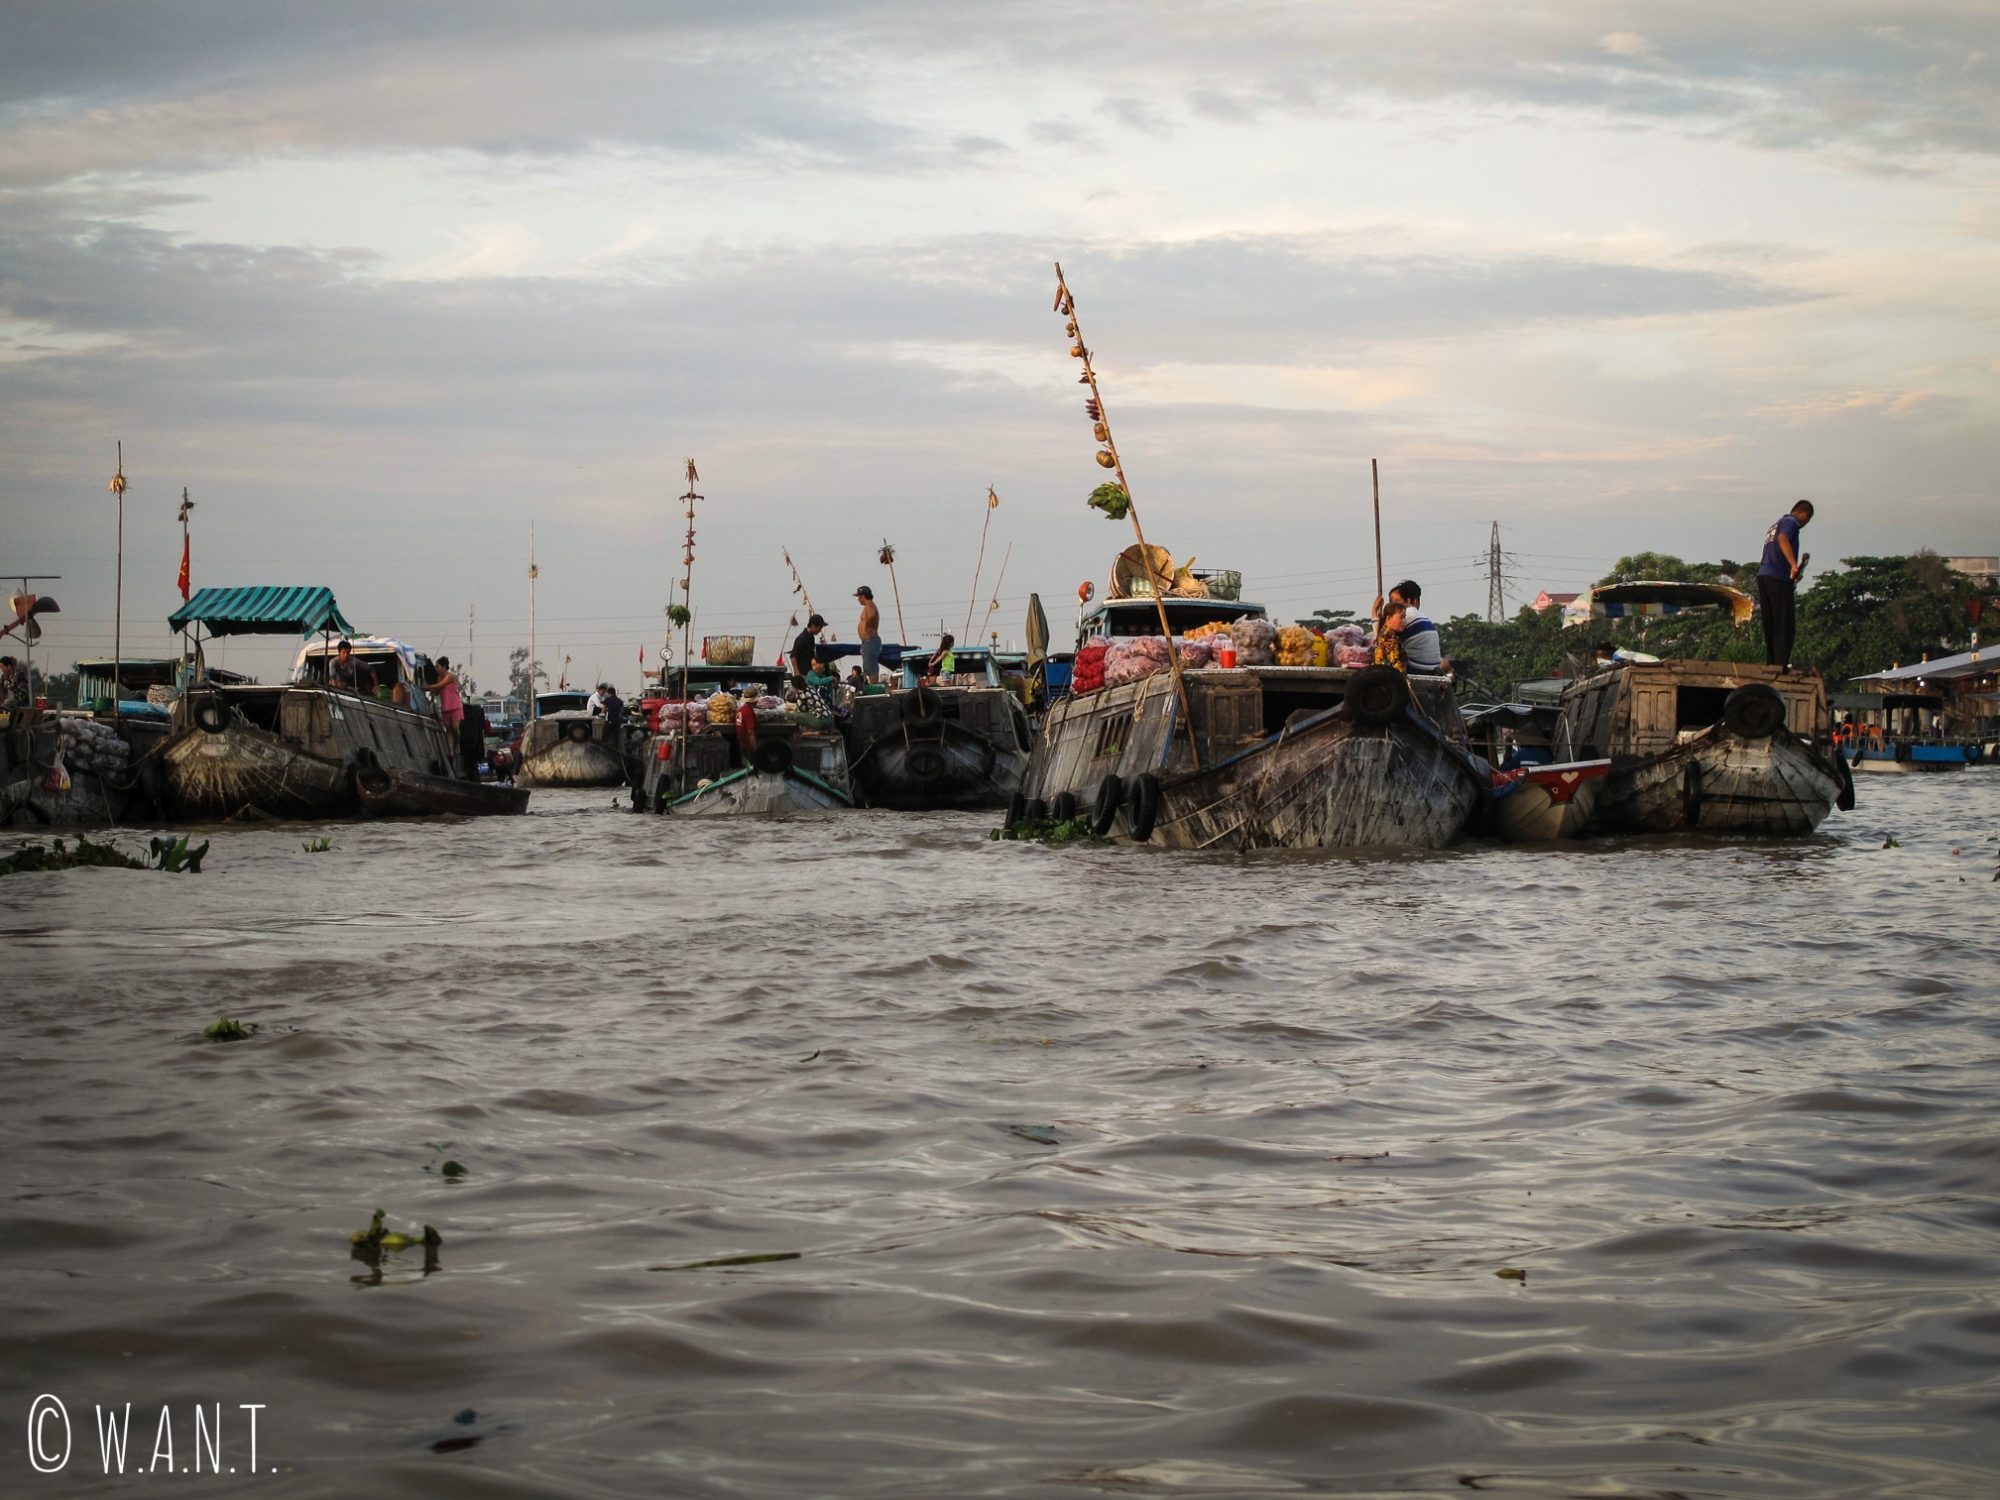 Vue sur le marché flottant de Cai Rang dans le delta du Mékong